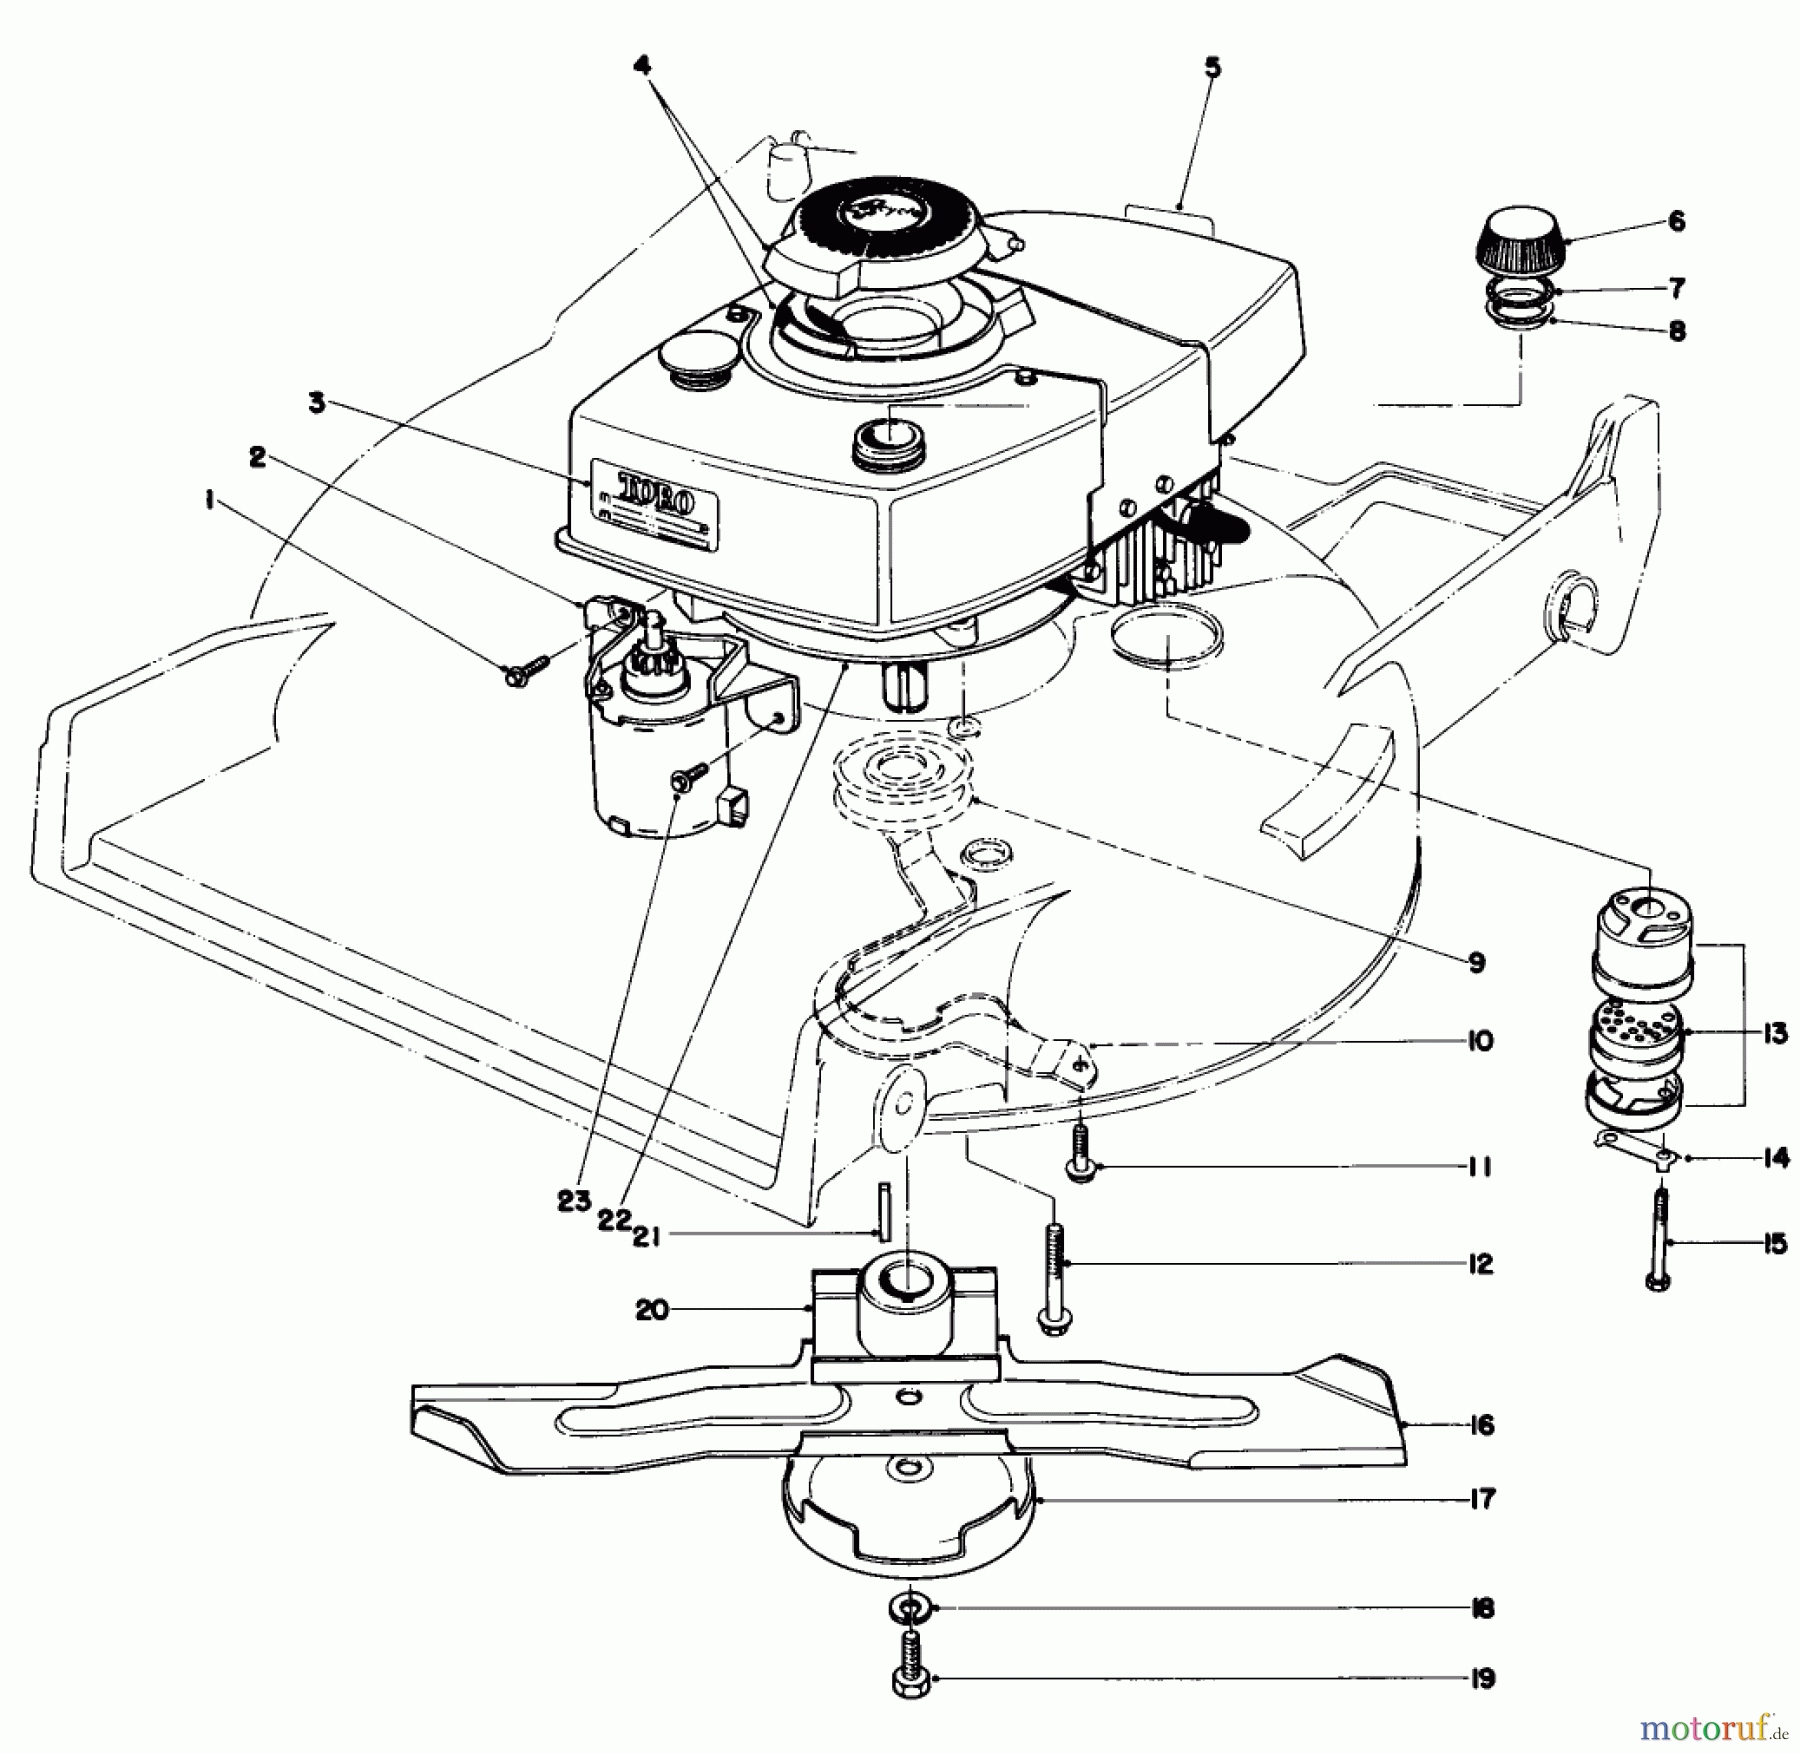  Toro Neu Mowers, Walk-Behind Seite 1 20715 - Toro Lawnmower, 1981 (1000001-1999999) ENGINE ASSEMBLY